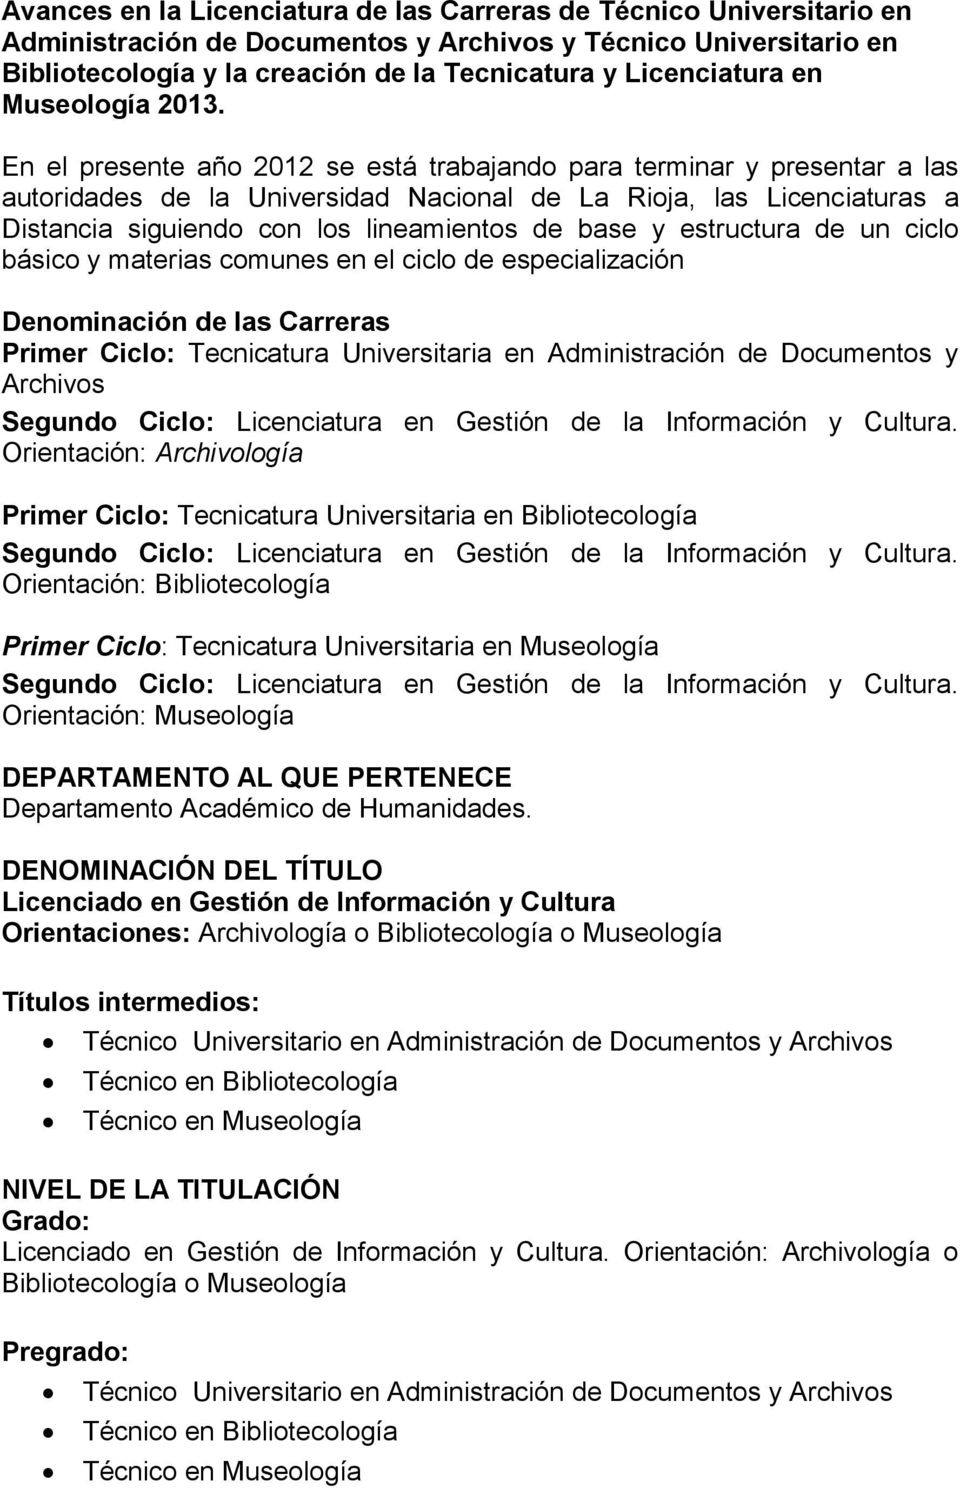 En el presente año 2012 se está trabajando para terminar y presentar a las autoridades de la Universidad Nacional de La Rioja, las Licenciaturas a Distancia siguiendo con los lineamientos de base y